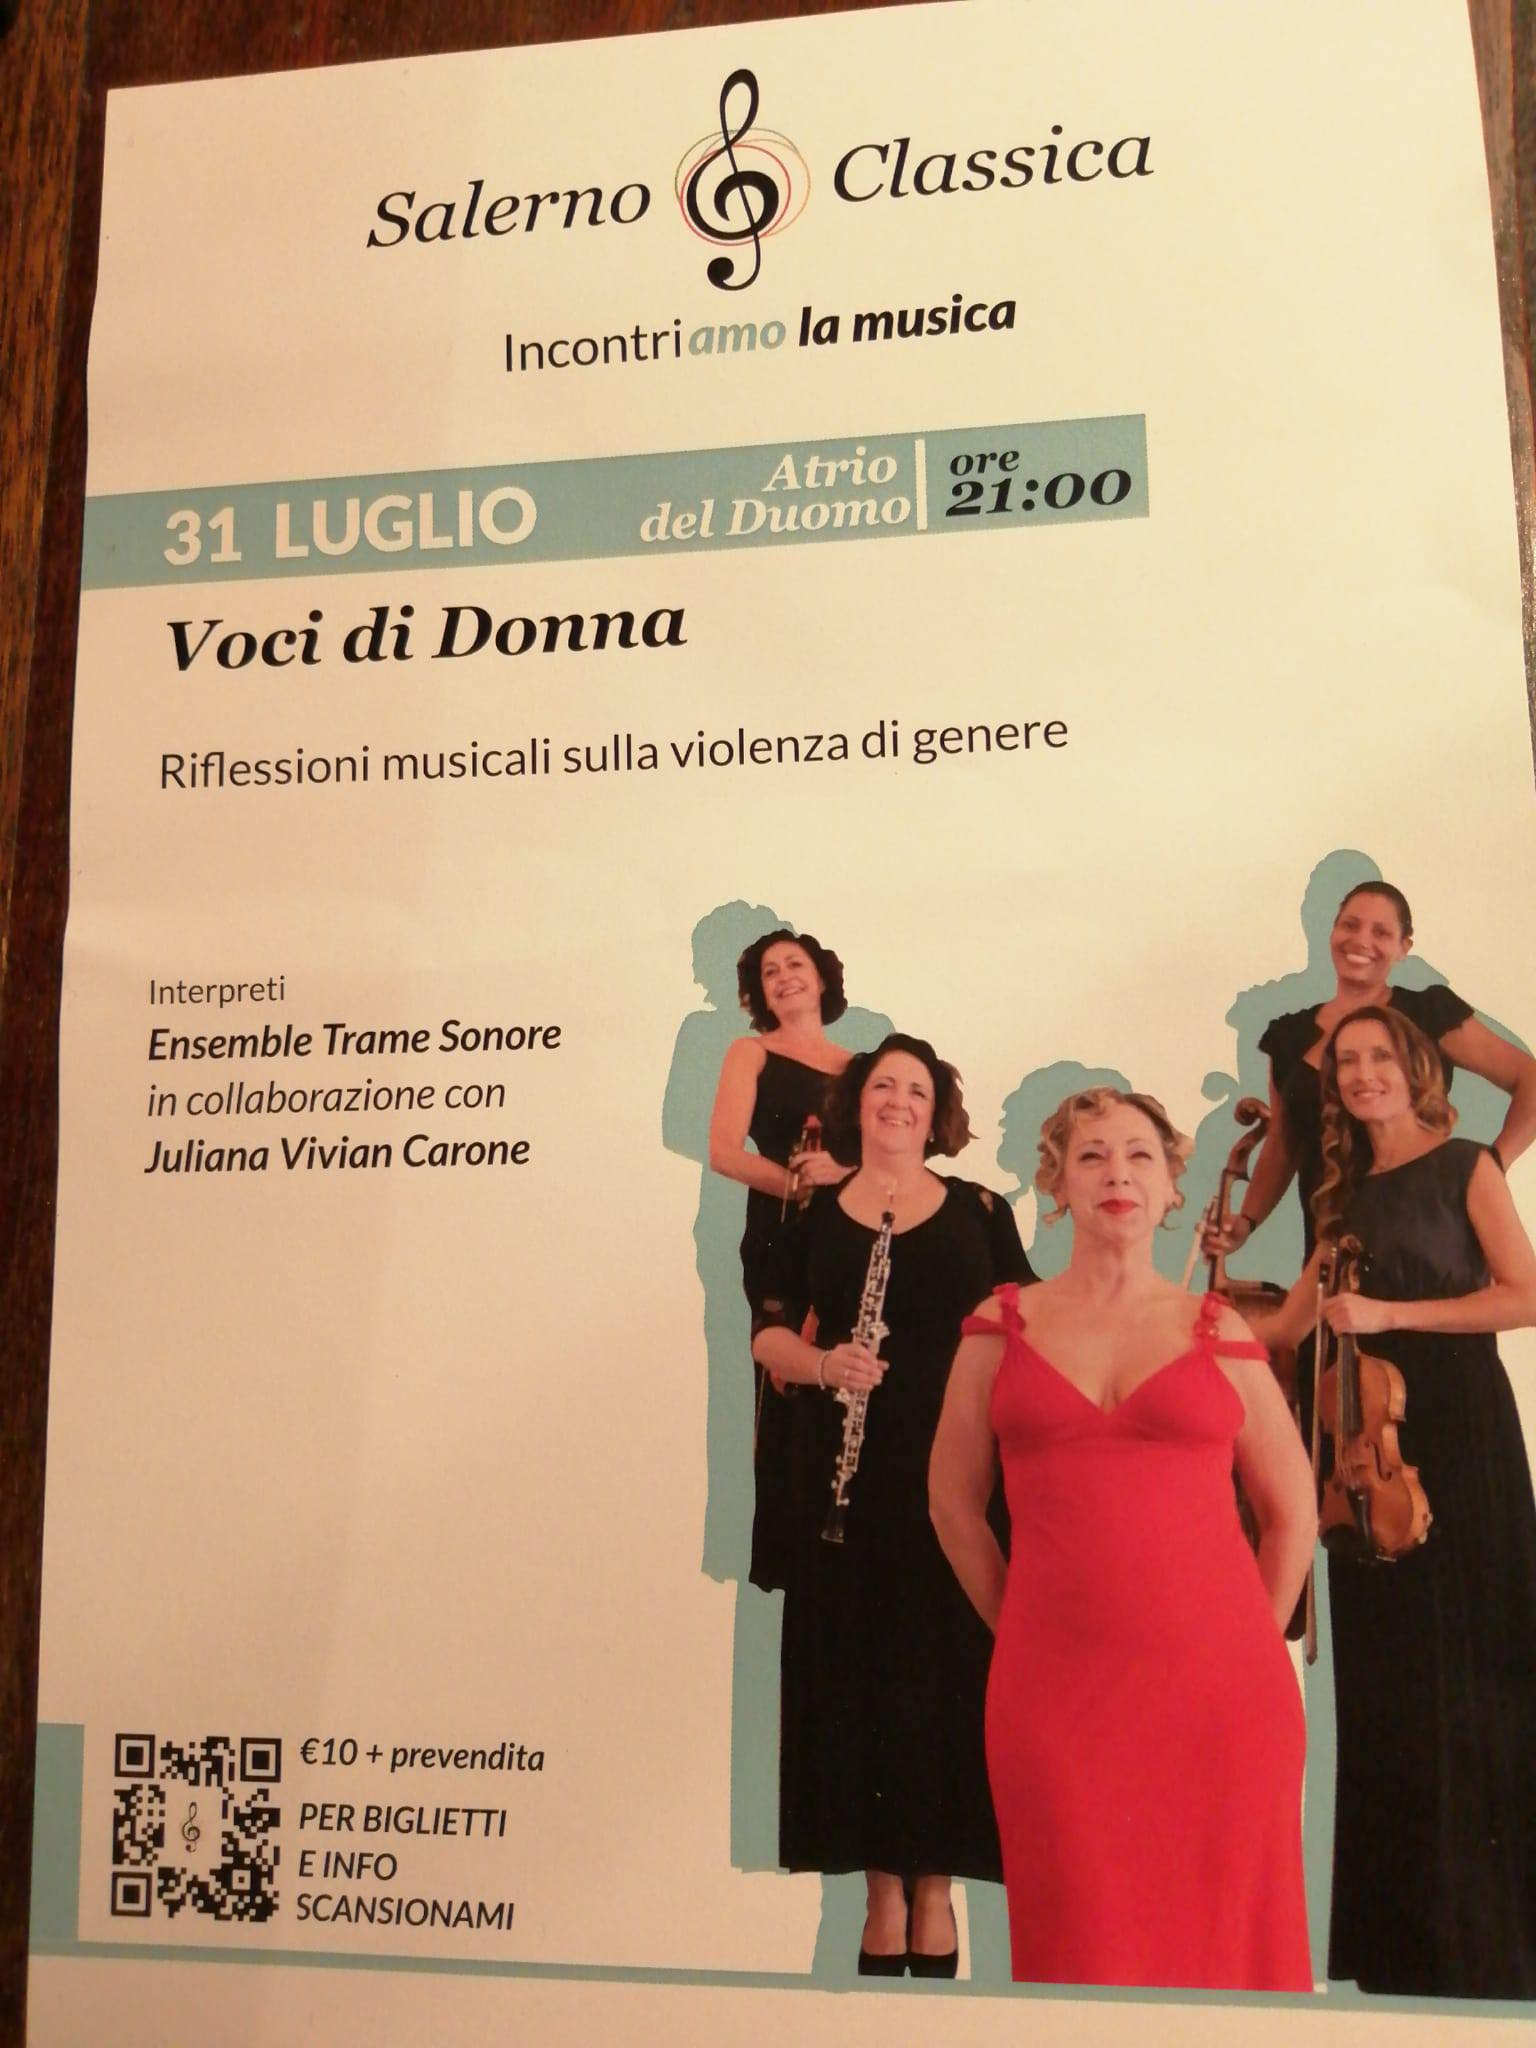 Programme cover for Voci di Donne concert in Duomo di Salerno